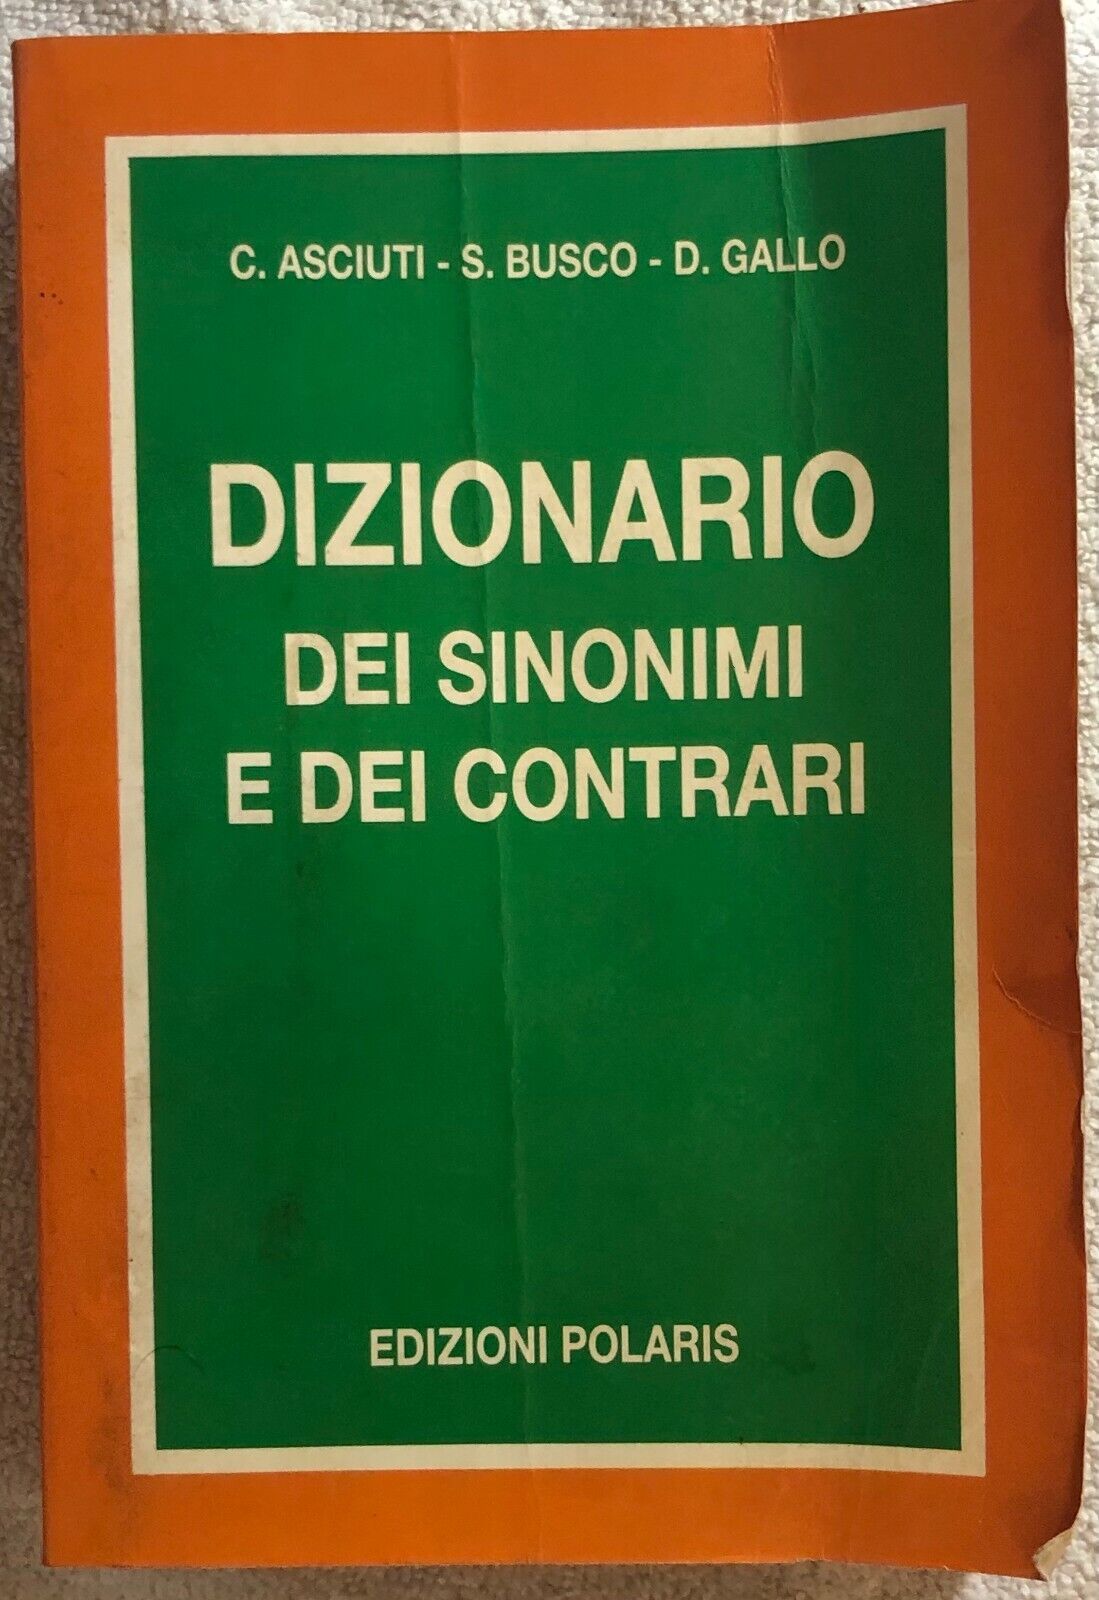 Dizionario dei sinonimi e dei contrari di C. Asciuti-s. Busco-d. Gallo,  1991,  